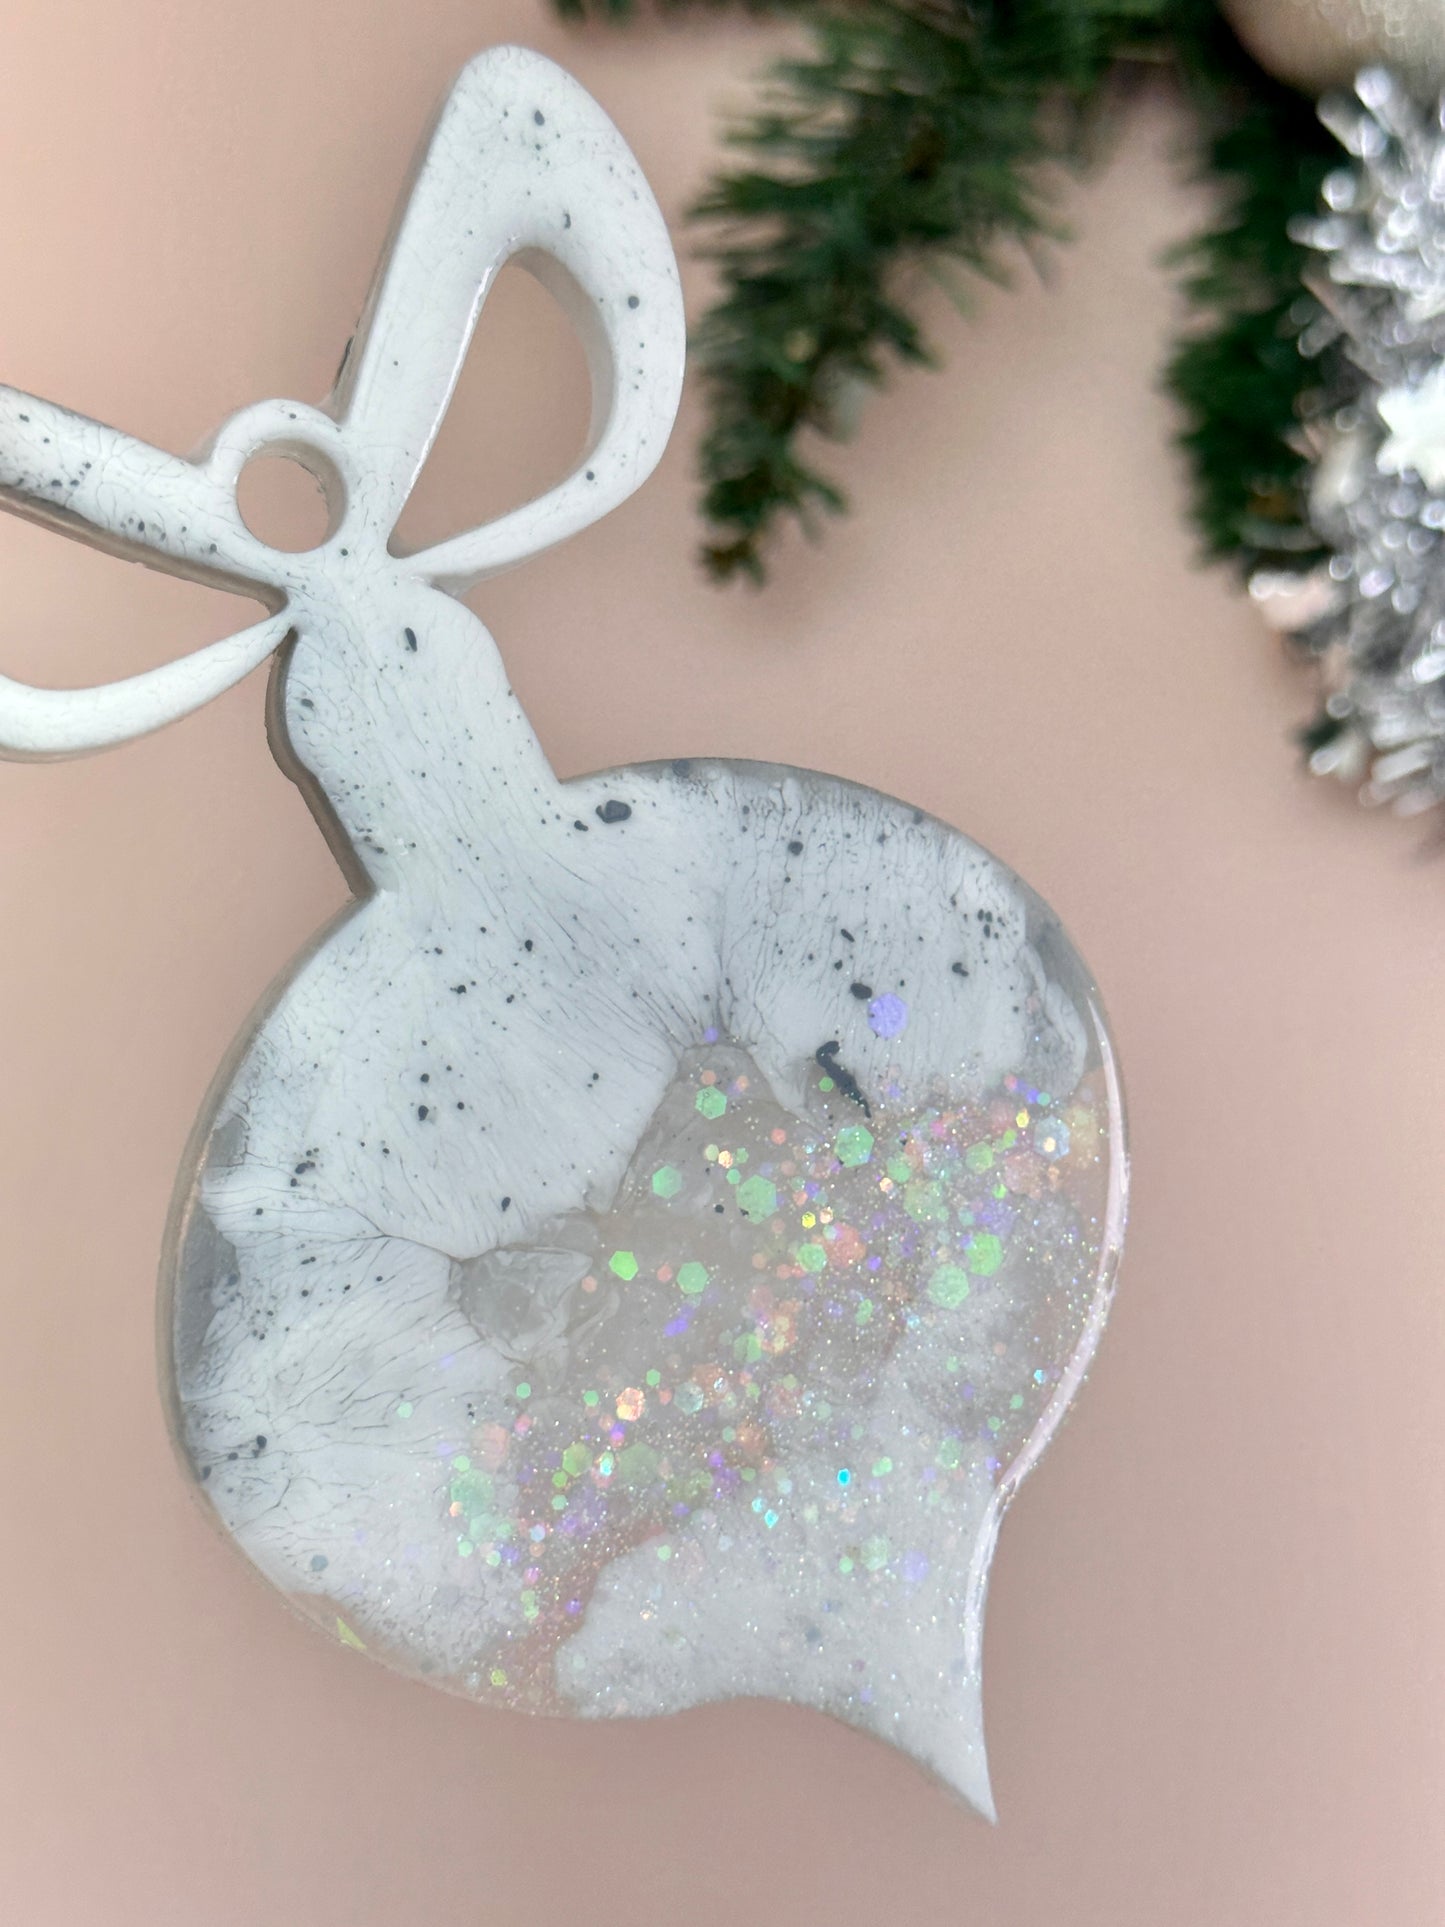 Silikonform für Weihnachtsbaumspielzeug: Kreieren Sie mit dieser großen Harzform festliche DIY-Kunsthandwerke und weihnachtliche Heimdekorationen